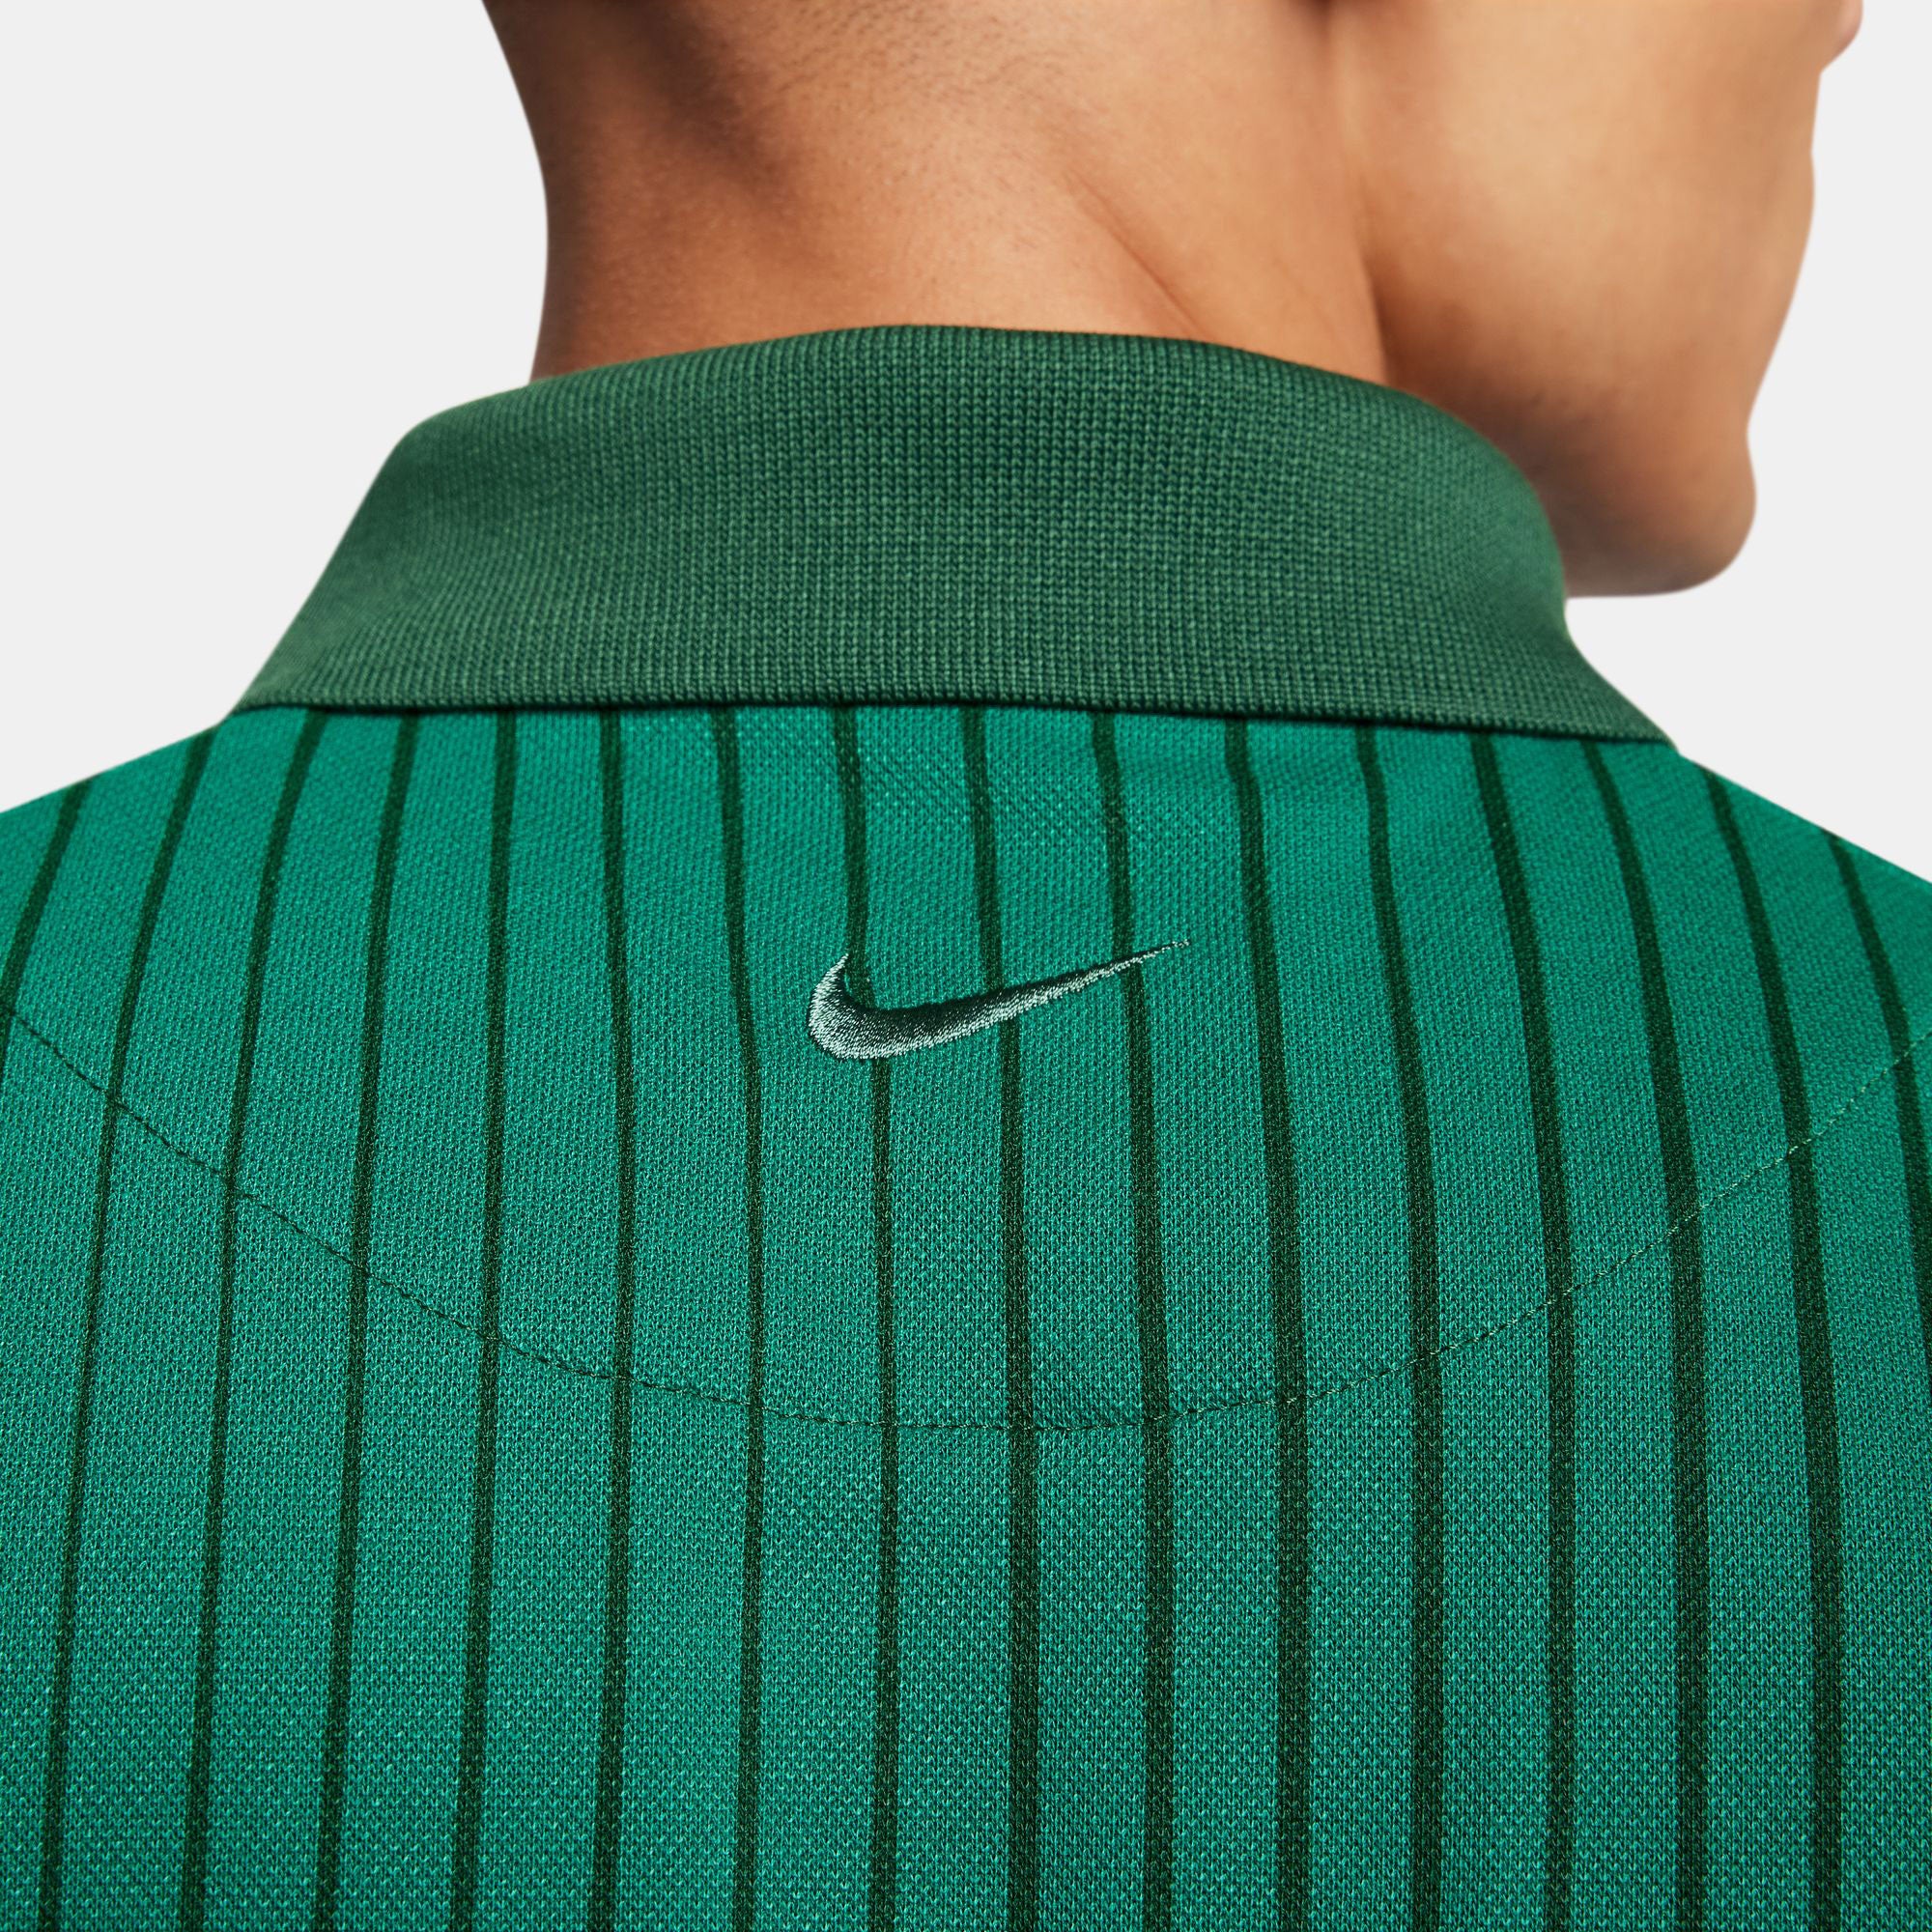 NikeCourt Heritage Men's Dri-FIT Printed Tennis Polo - Green (5)